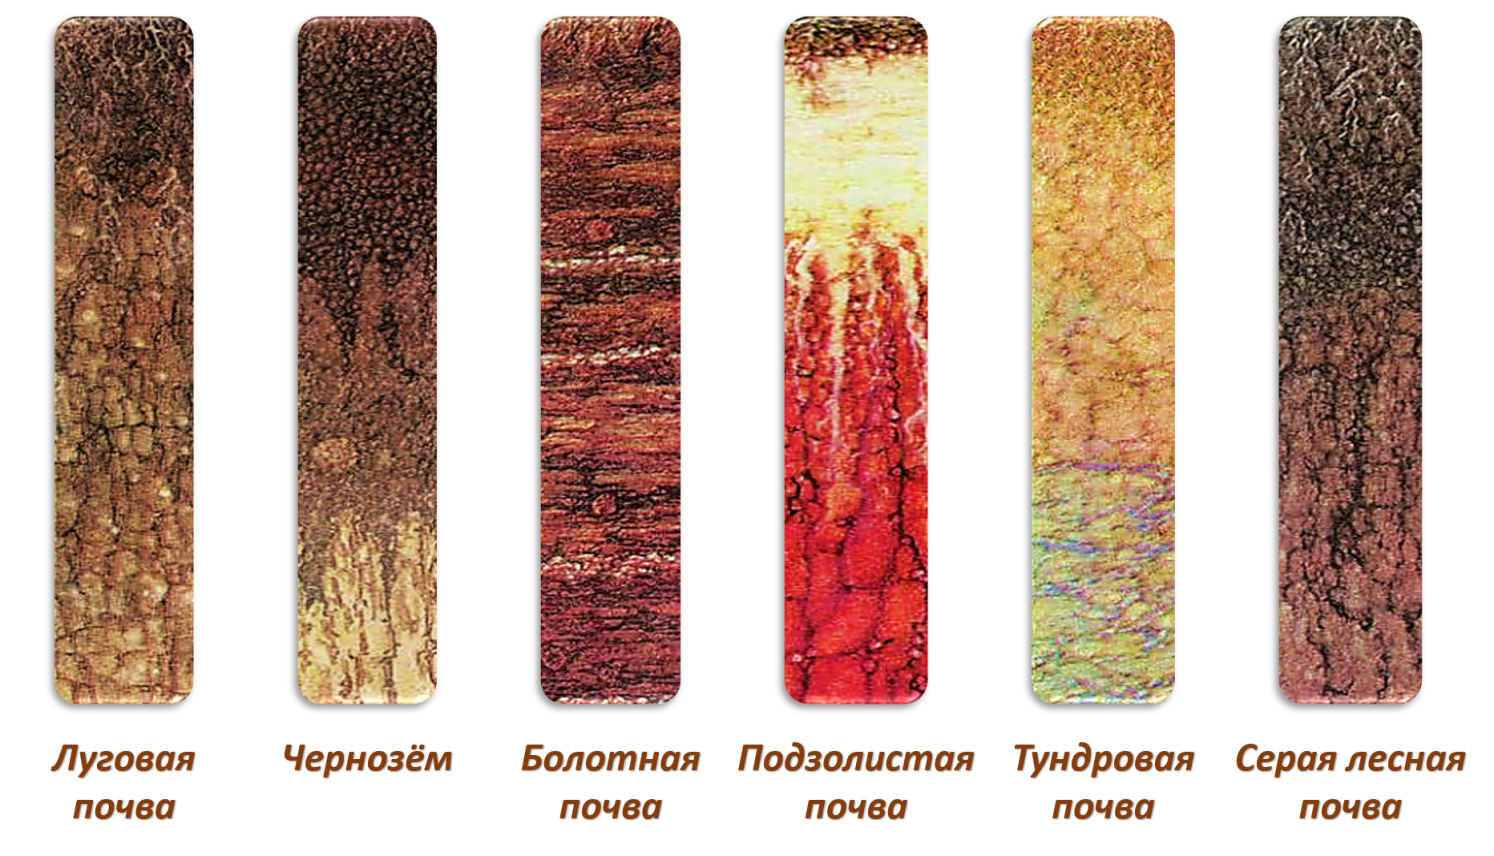 Типы почв тундровые подзолистые. Почвенные профили почв России. Почвы подзолистые Лесные чернозем. Подзолистый Тип почвы. Теплые и холодные почвы